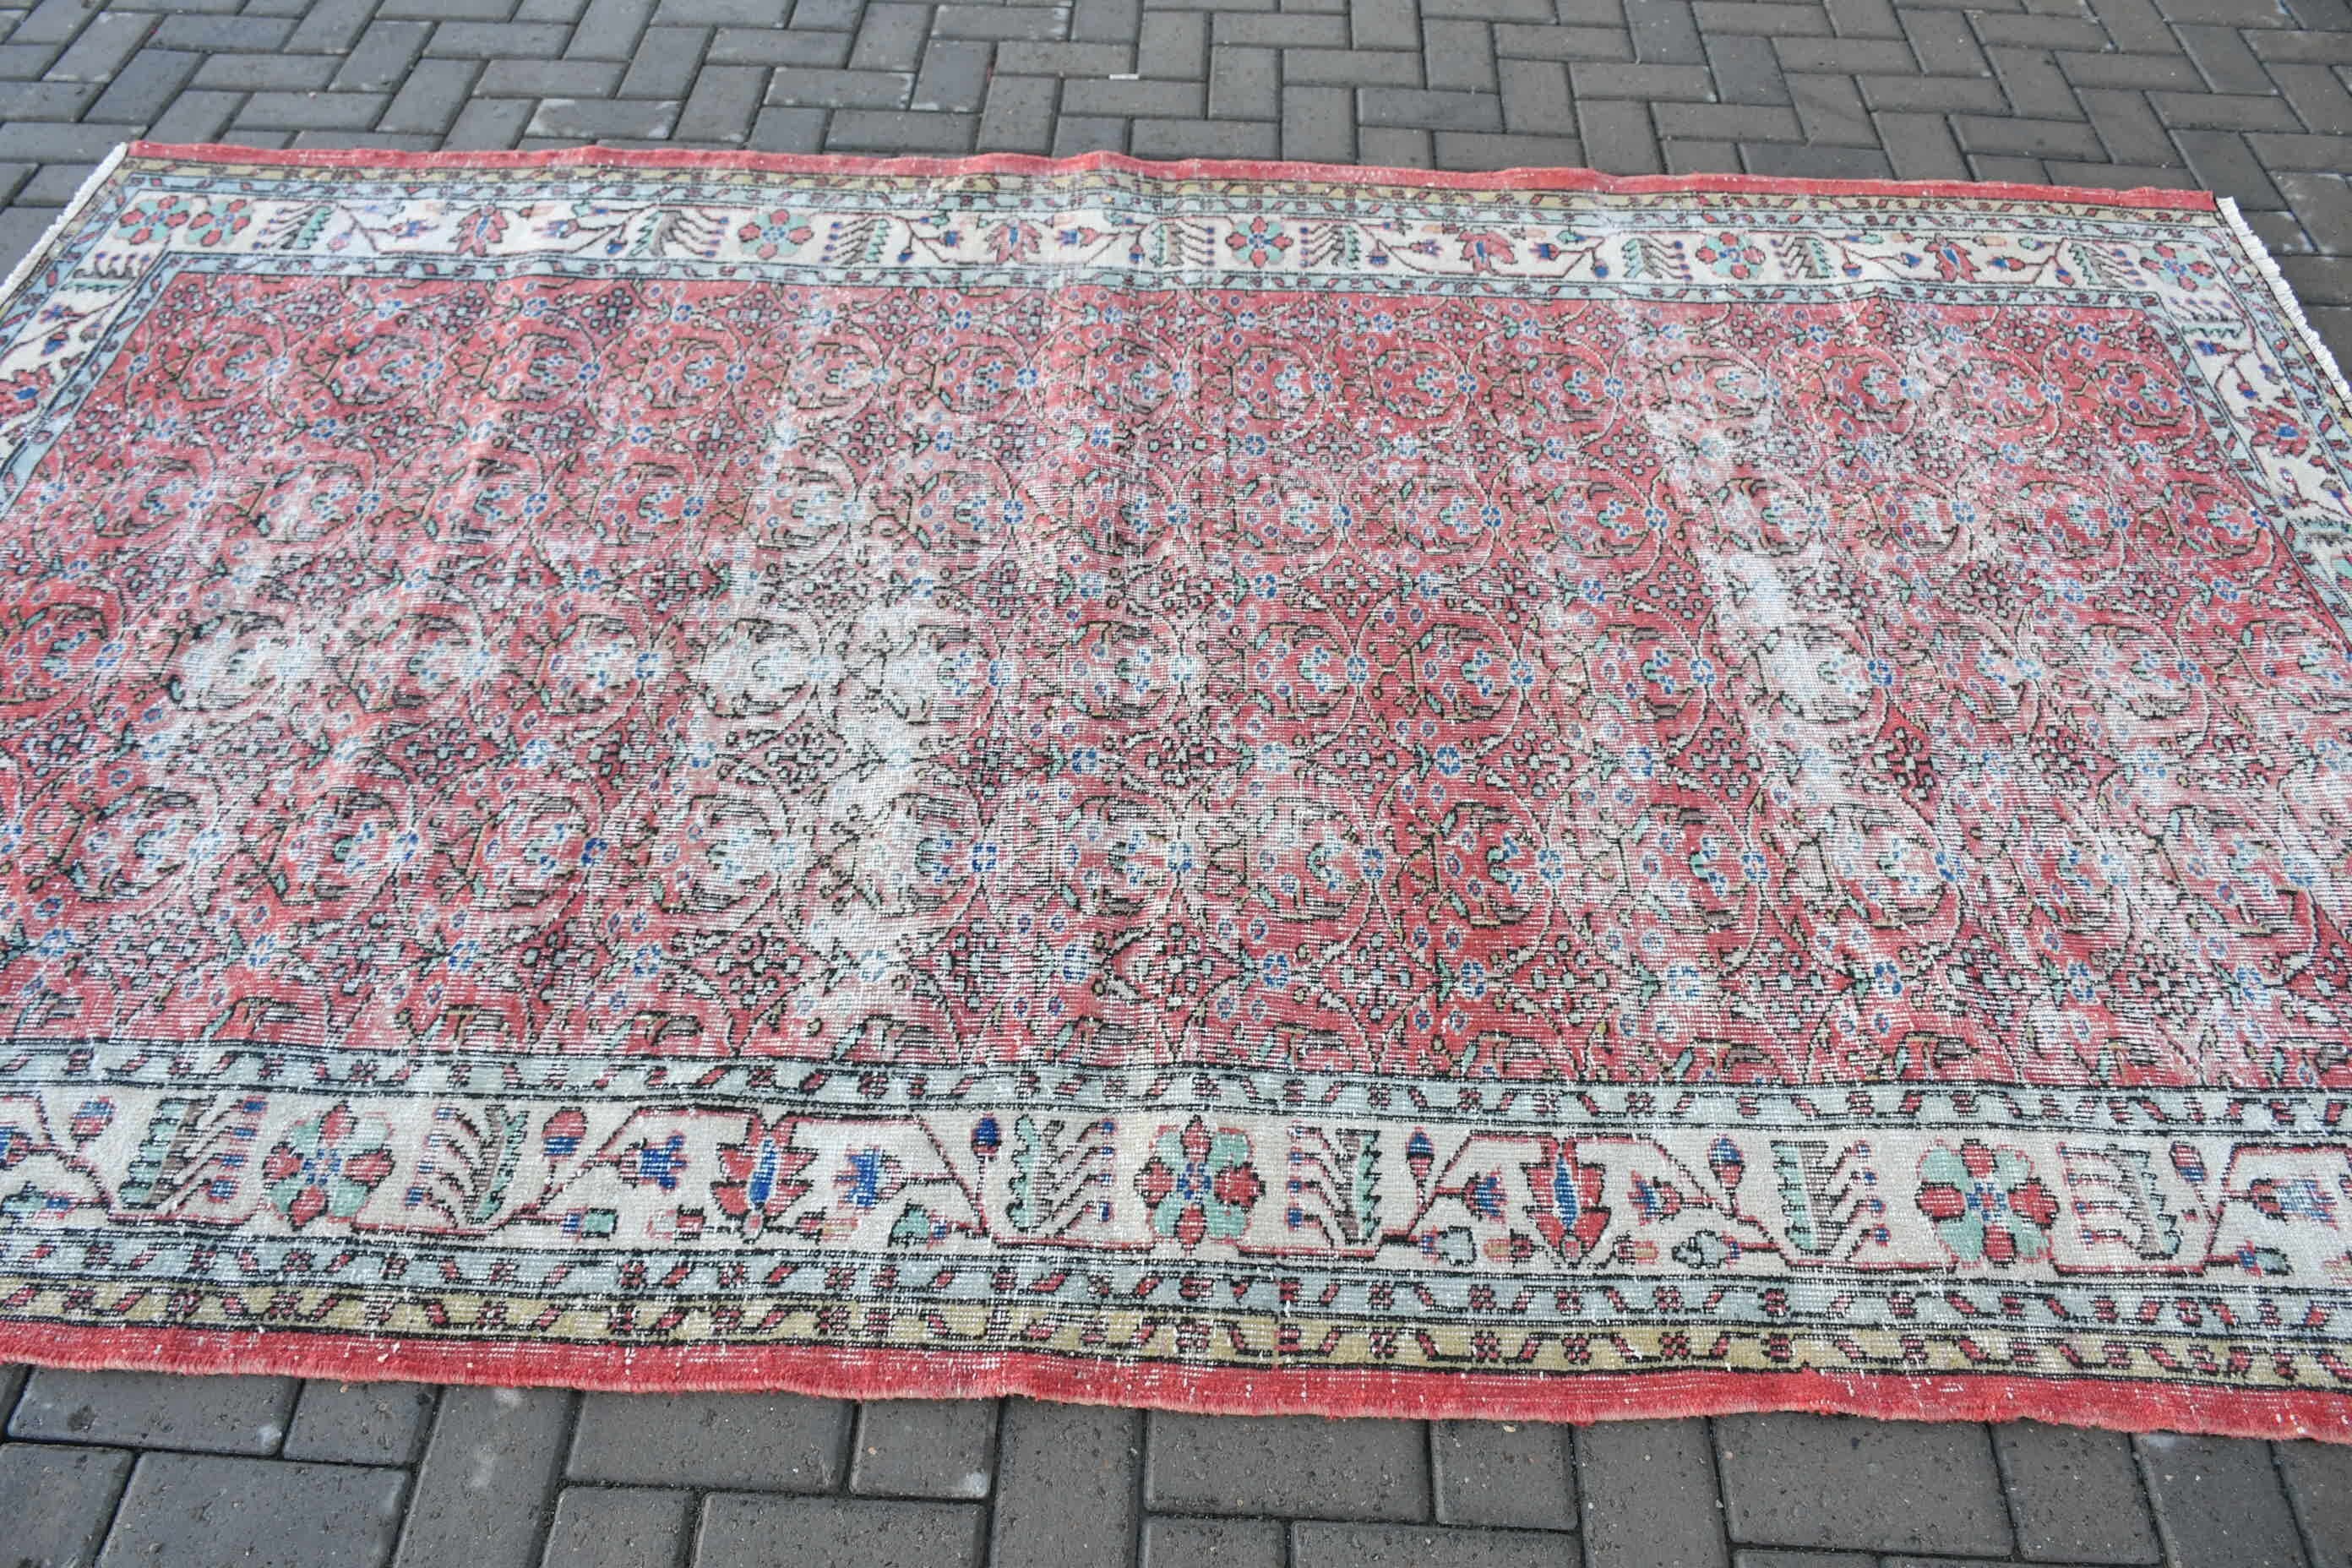 Antique Rug, Vintage Rugs, Oriental Rugs, 5.4x9.1 ft Large Rugs, Salon Rug, Turkish Rug, Bedroom Rug, Rugs for Dining Room, Red Wool Rug